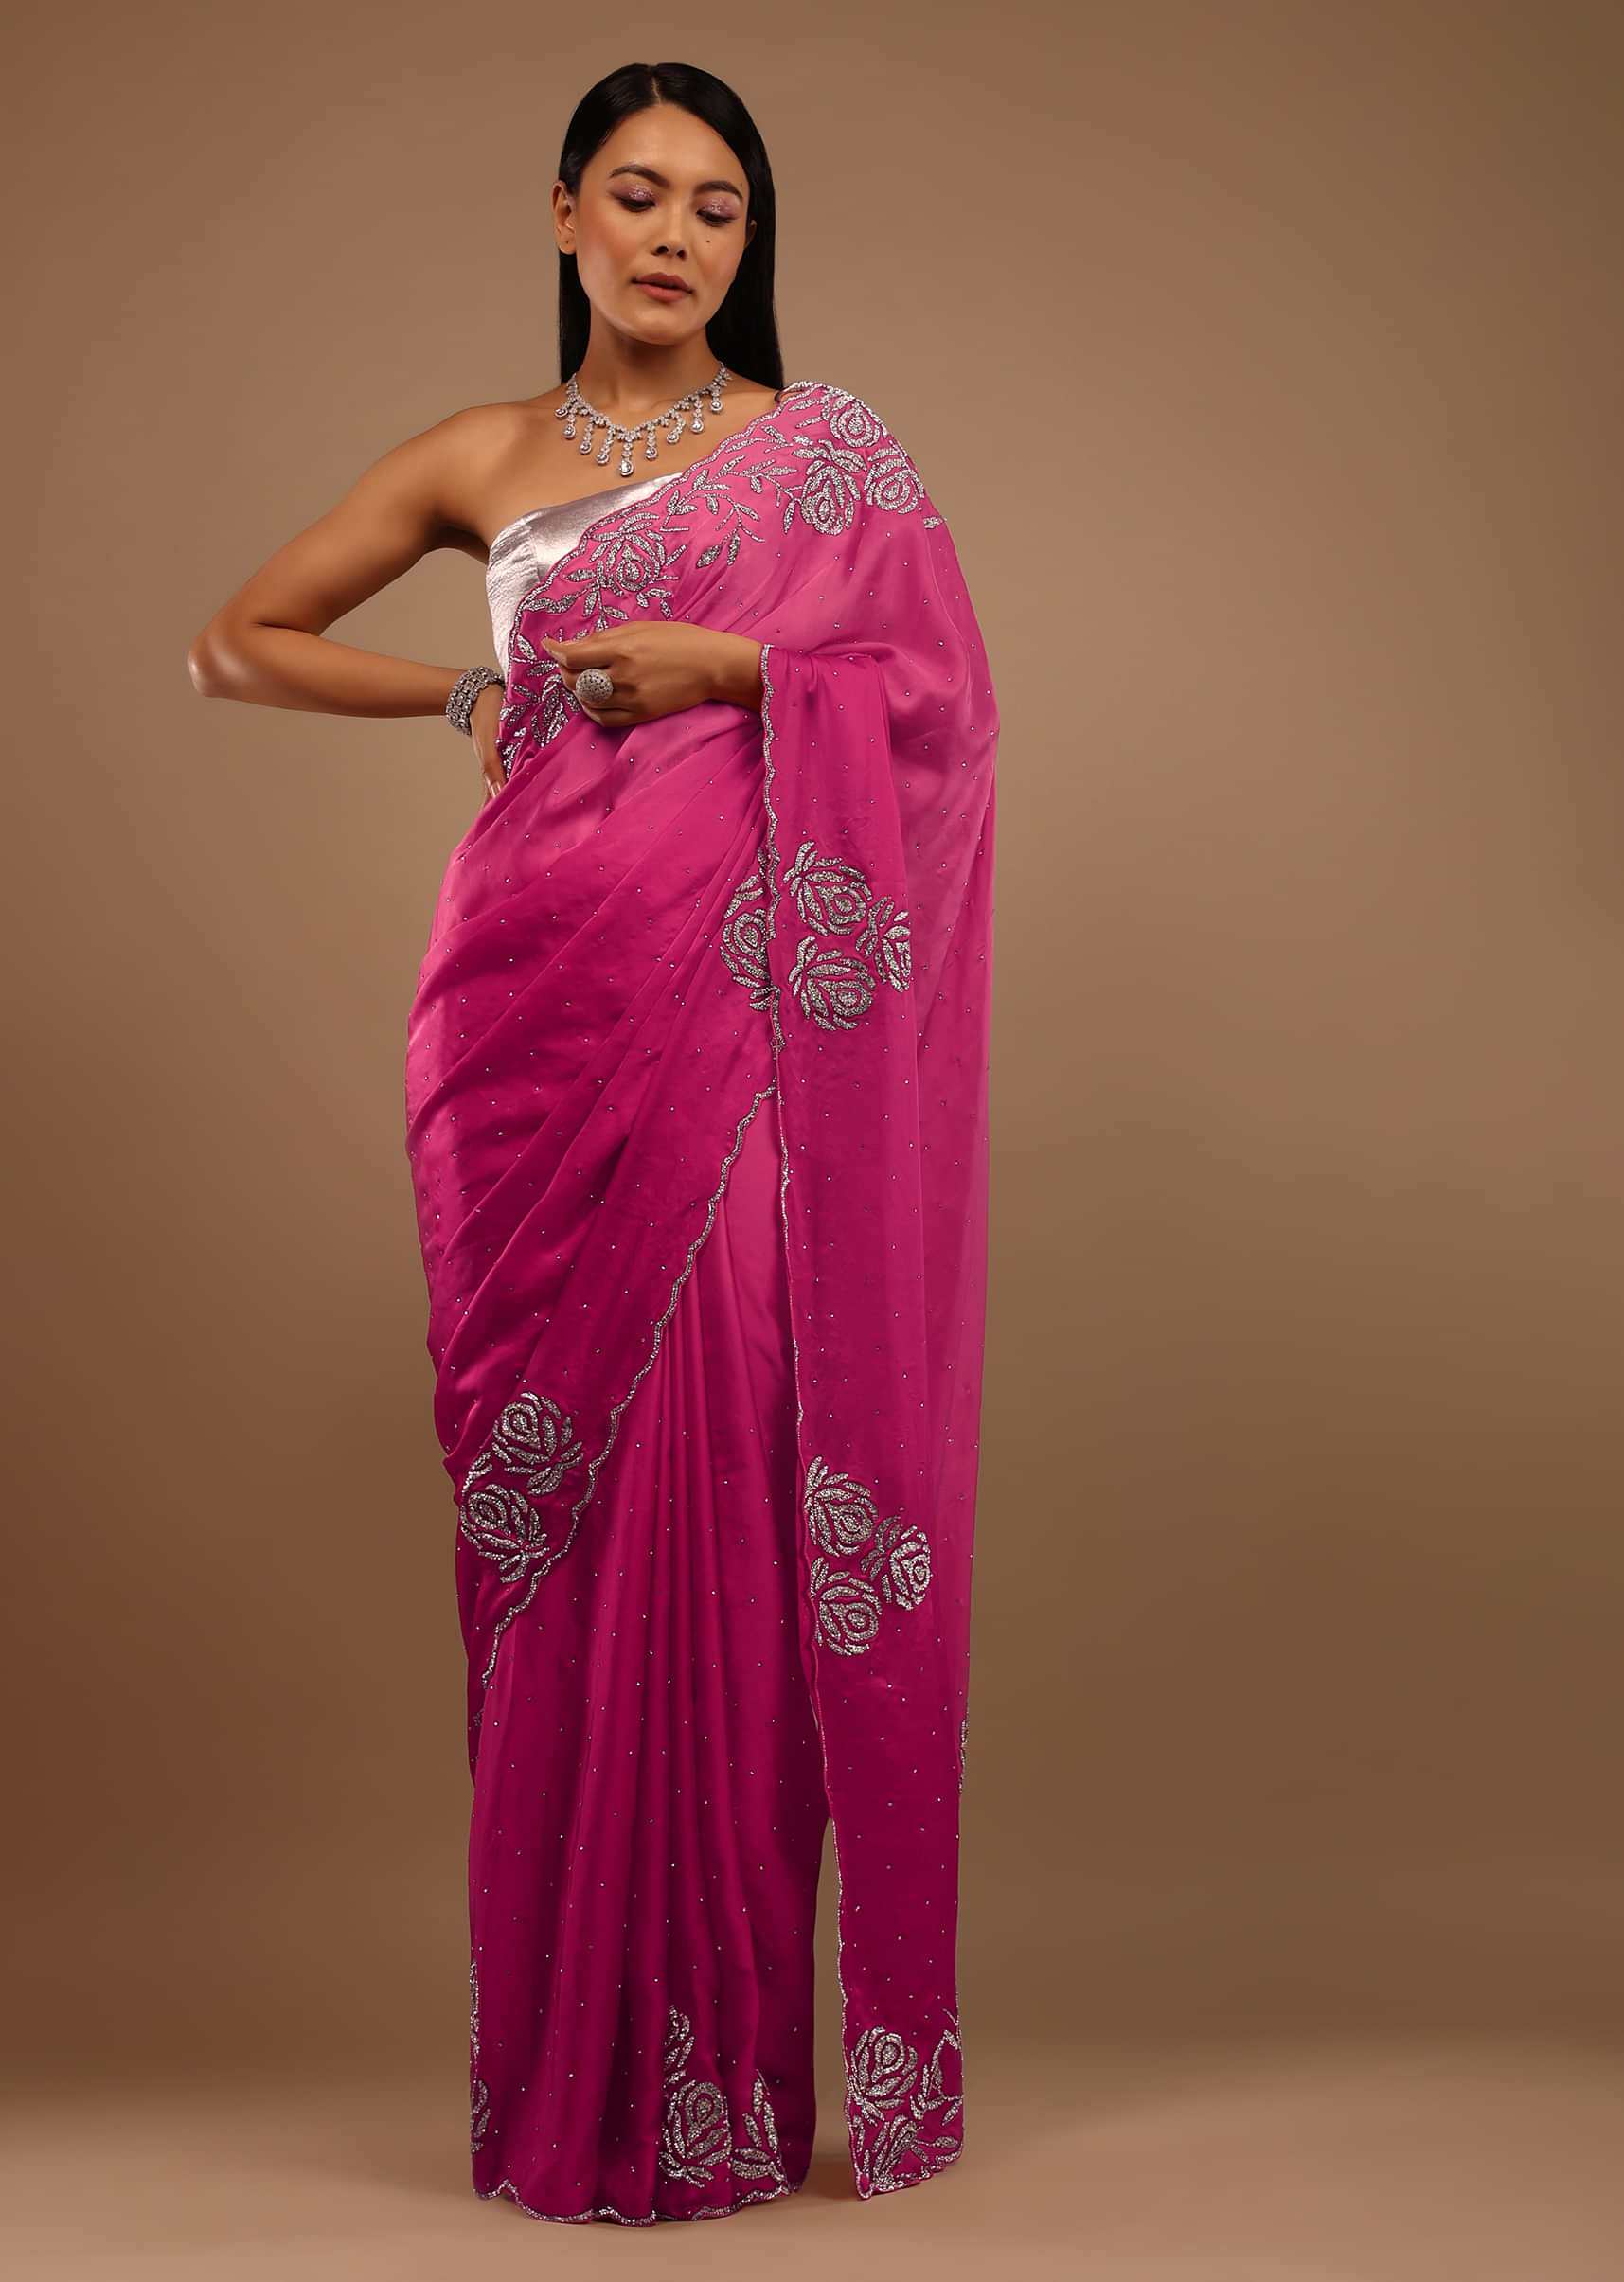 Pink Satin Saree With Swarovski Stonework In A Rose Motif